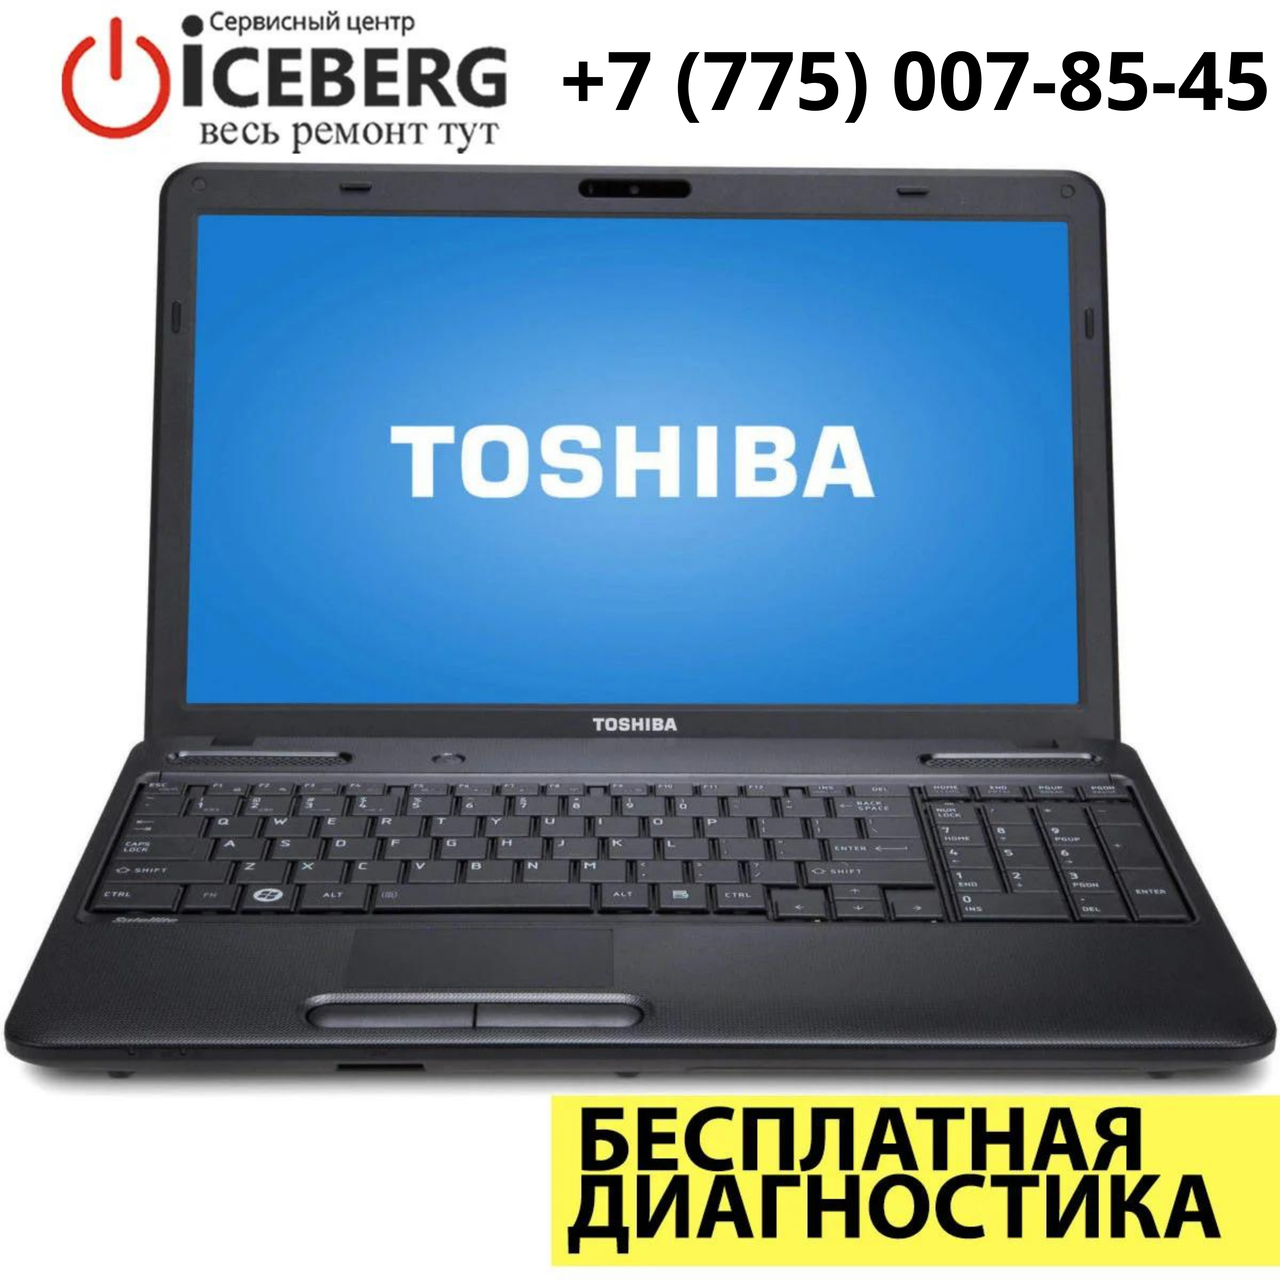 Ремонт ноутбуков и компьютеров Toshiba в Алматы